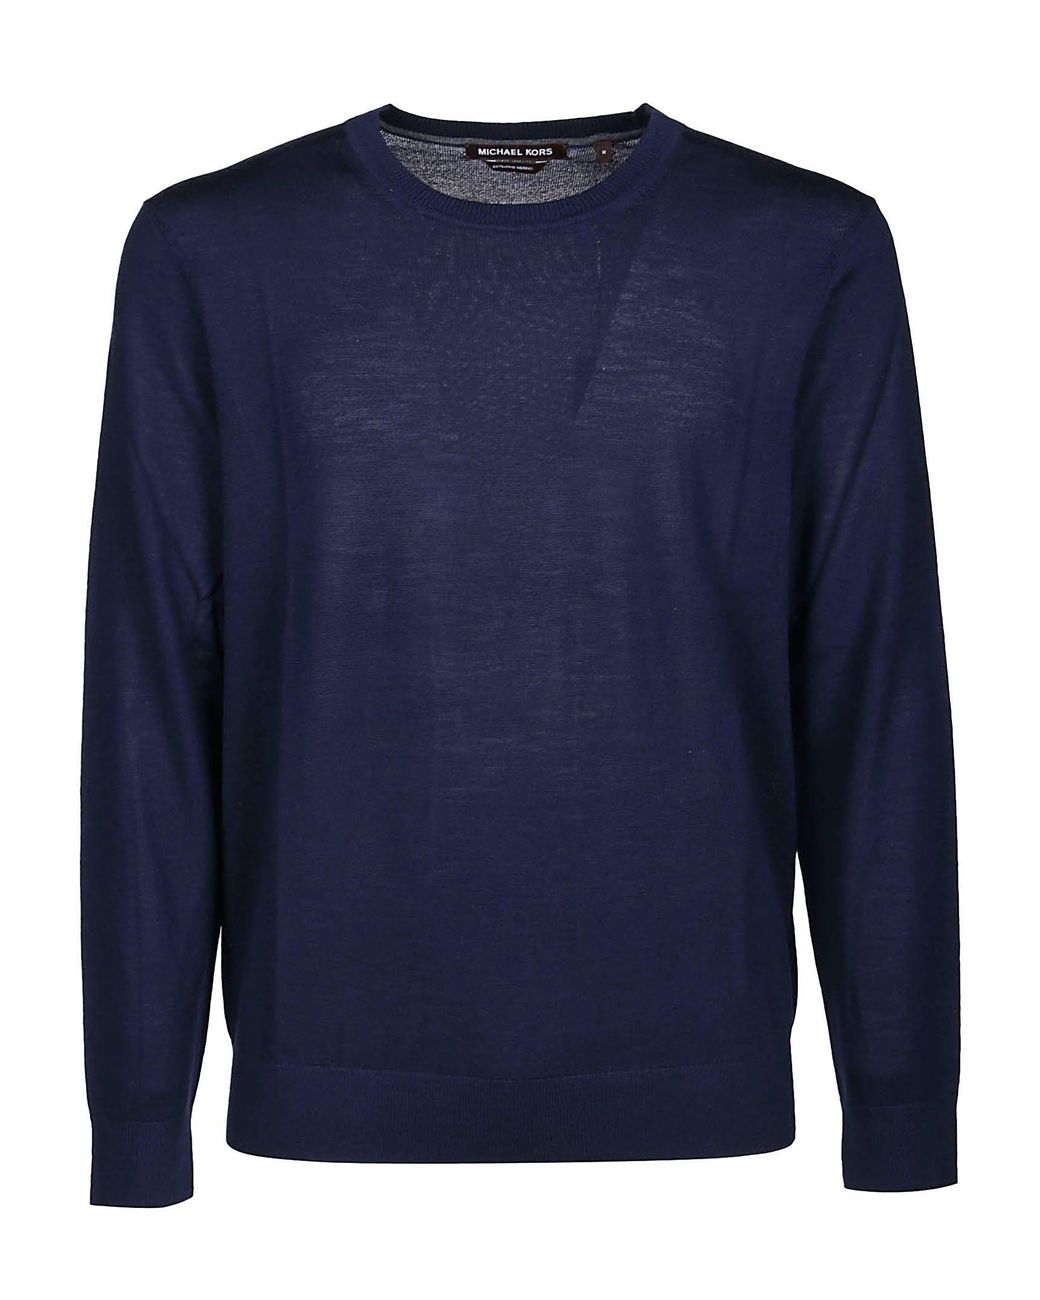 Michael Kors Wool Sweater in Blue for Men - Lyst